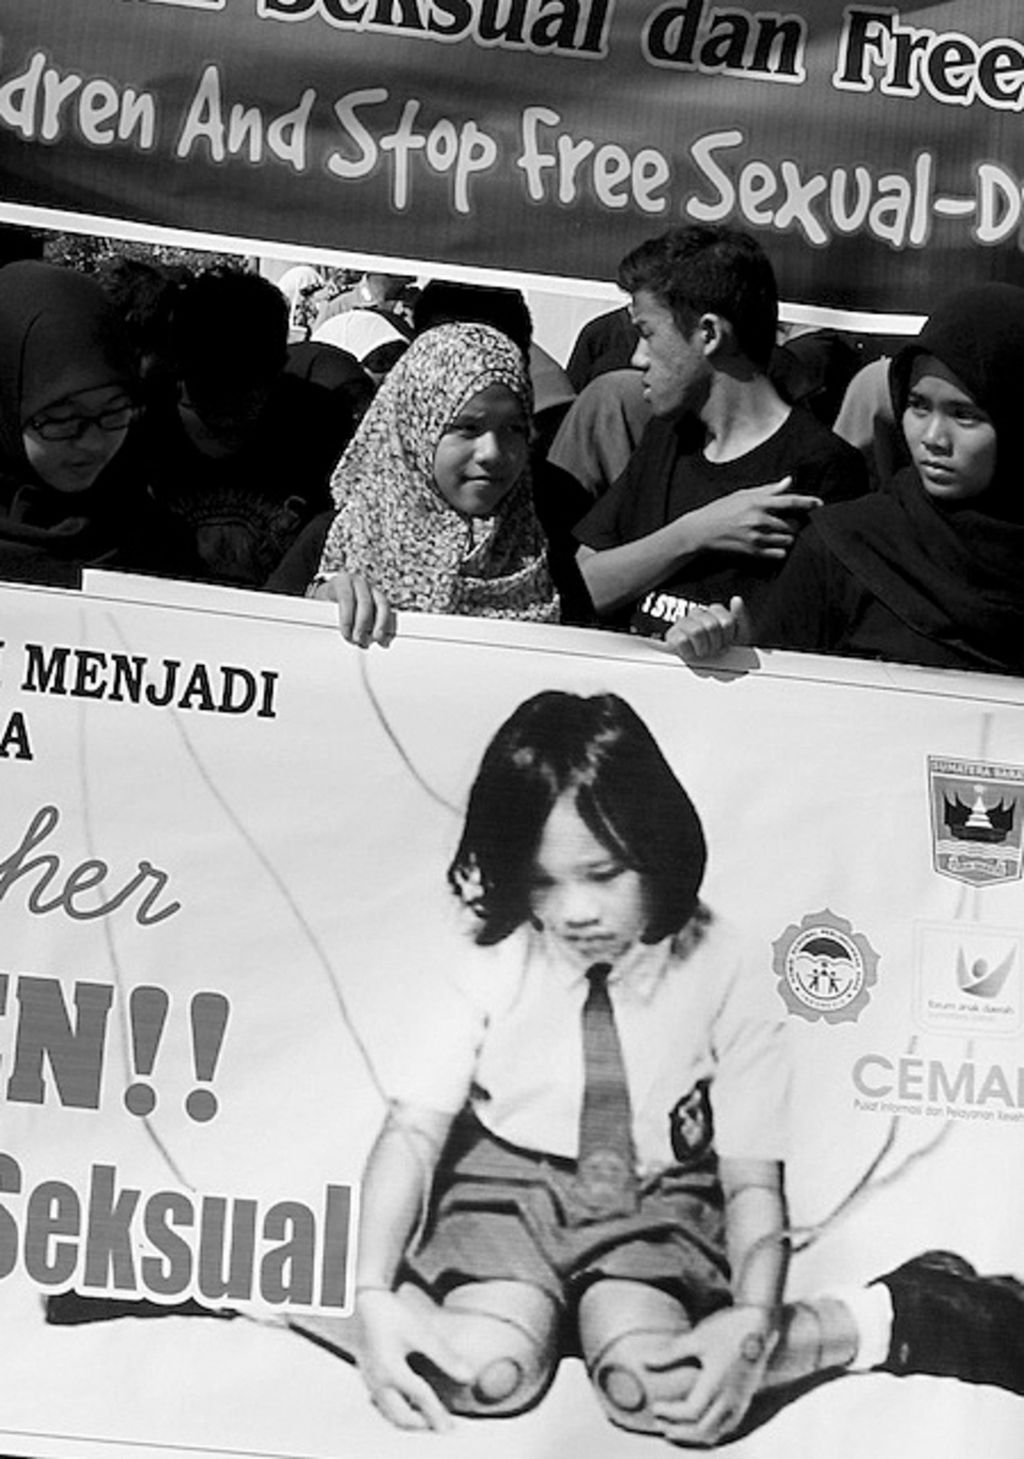 Pelajar dari berbagai wilayah di Sumatera Barat menggelar aksi solidaritas menyikapi maraknya kasus kekerasan seksual terhadap anak di Indonesia di kawasan Jalan Sudirman Kota Padang, Minggu (25/5/2014). Lewat aksinya, mereka mengajak warga untuk ambil bagian dalam upaya perlindungan terhadap anak-anak dari tindakan asusila.